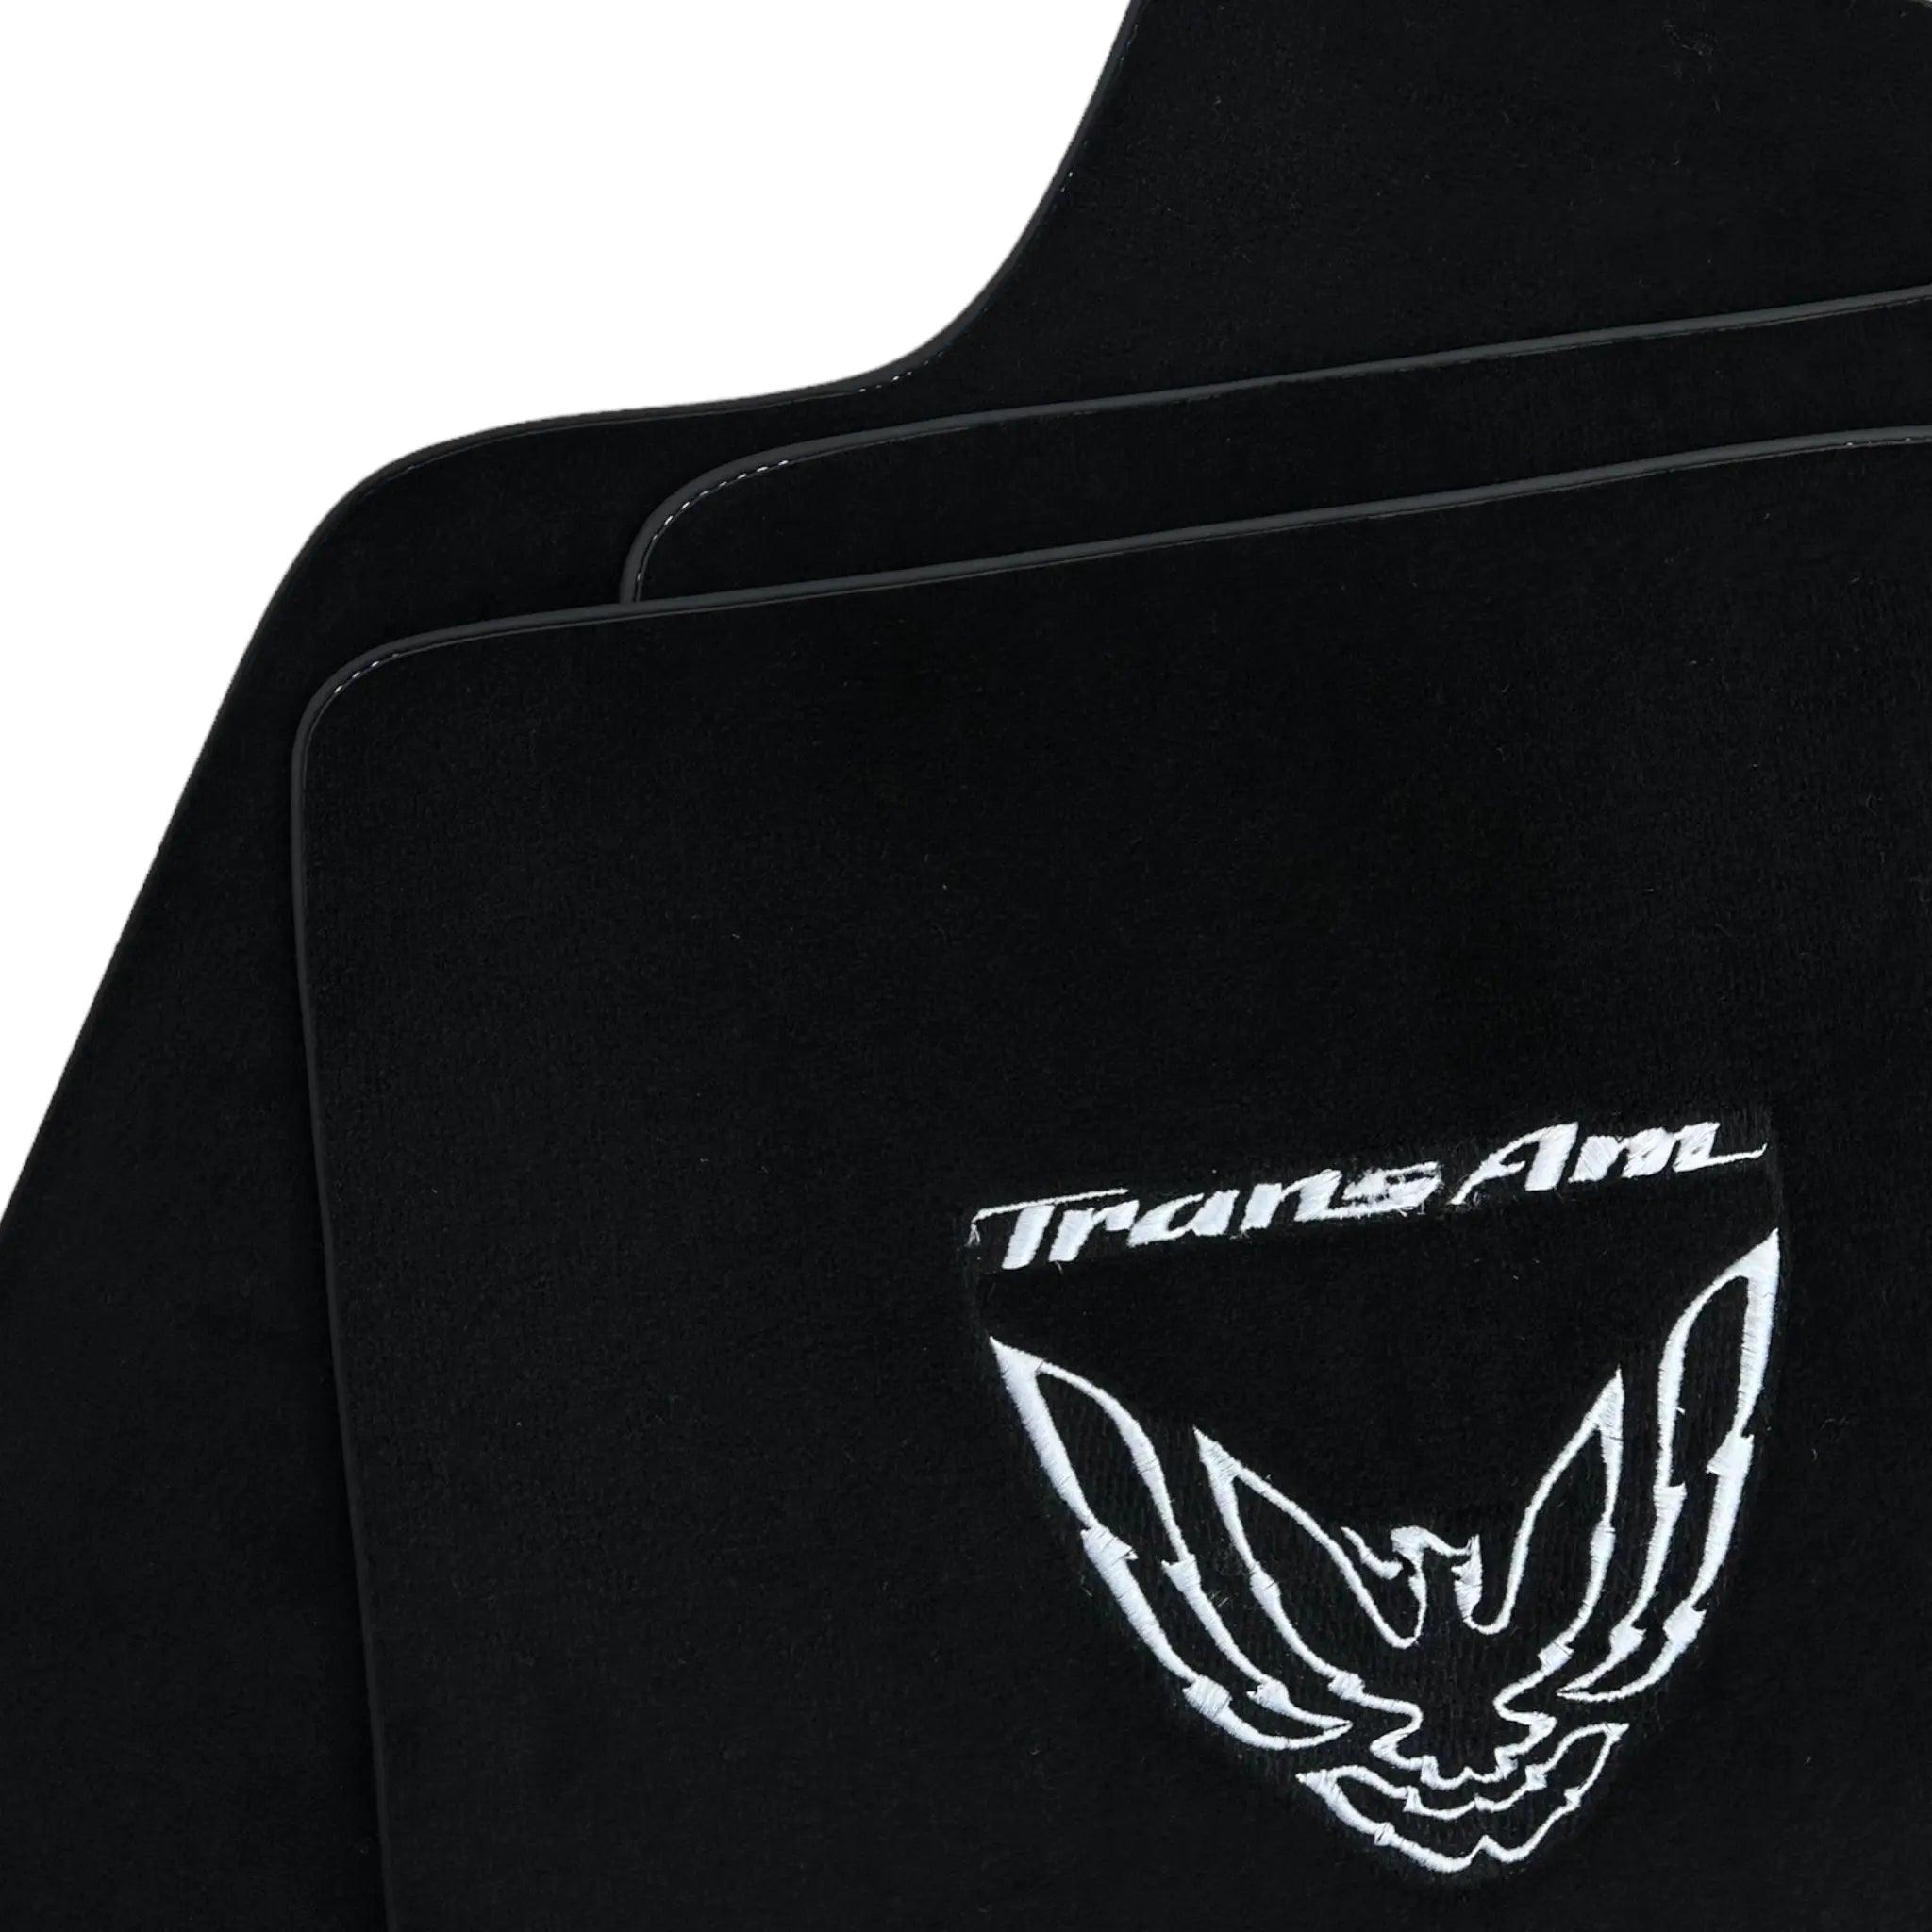 Black Floor Mats for Pontiac FireBird (1970-1981) with TransAm Logo